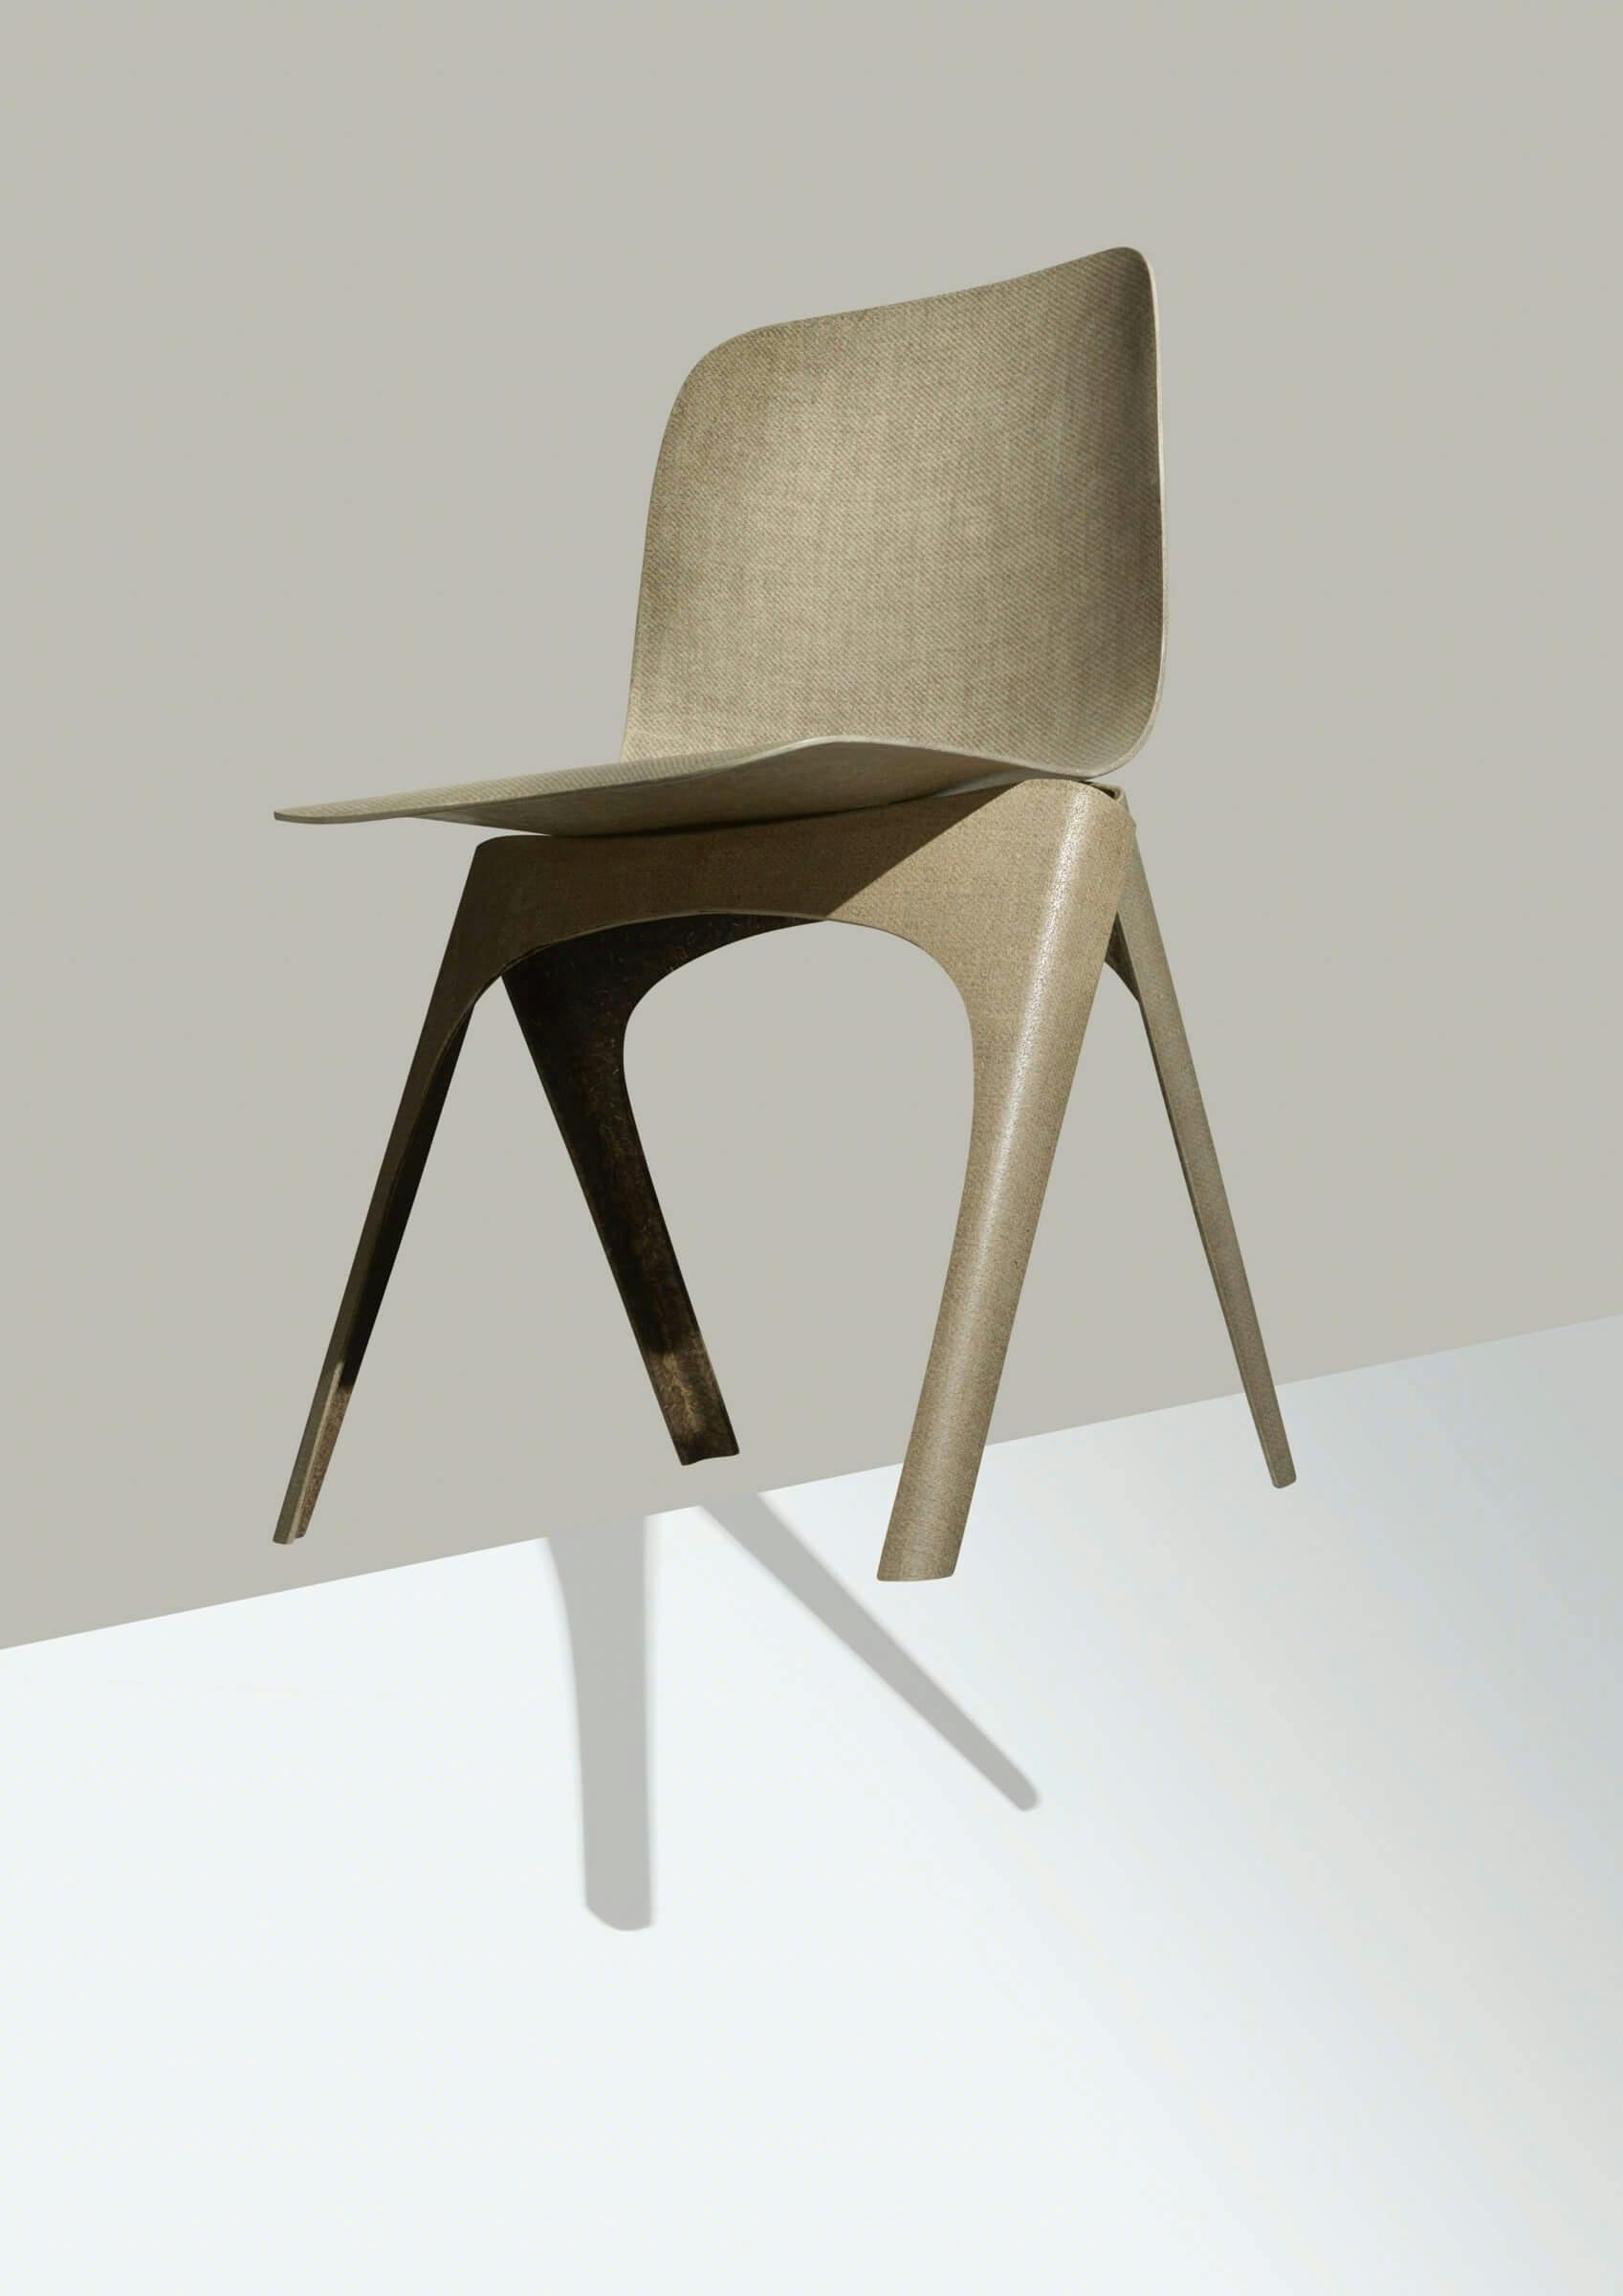 Christien Meindertsma, Flax Chair 